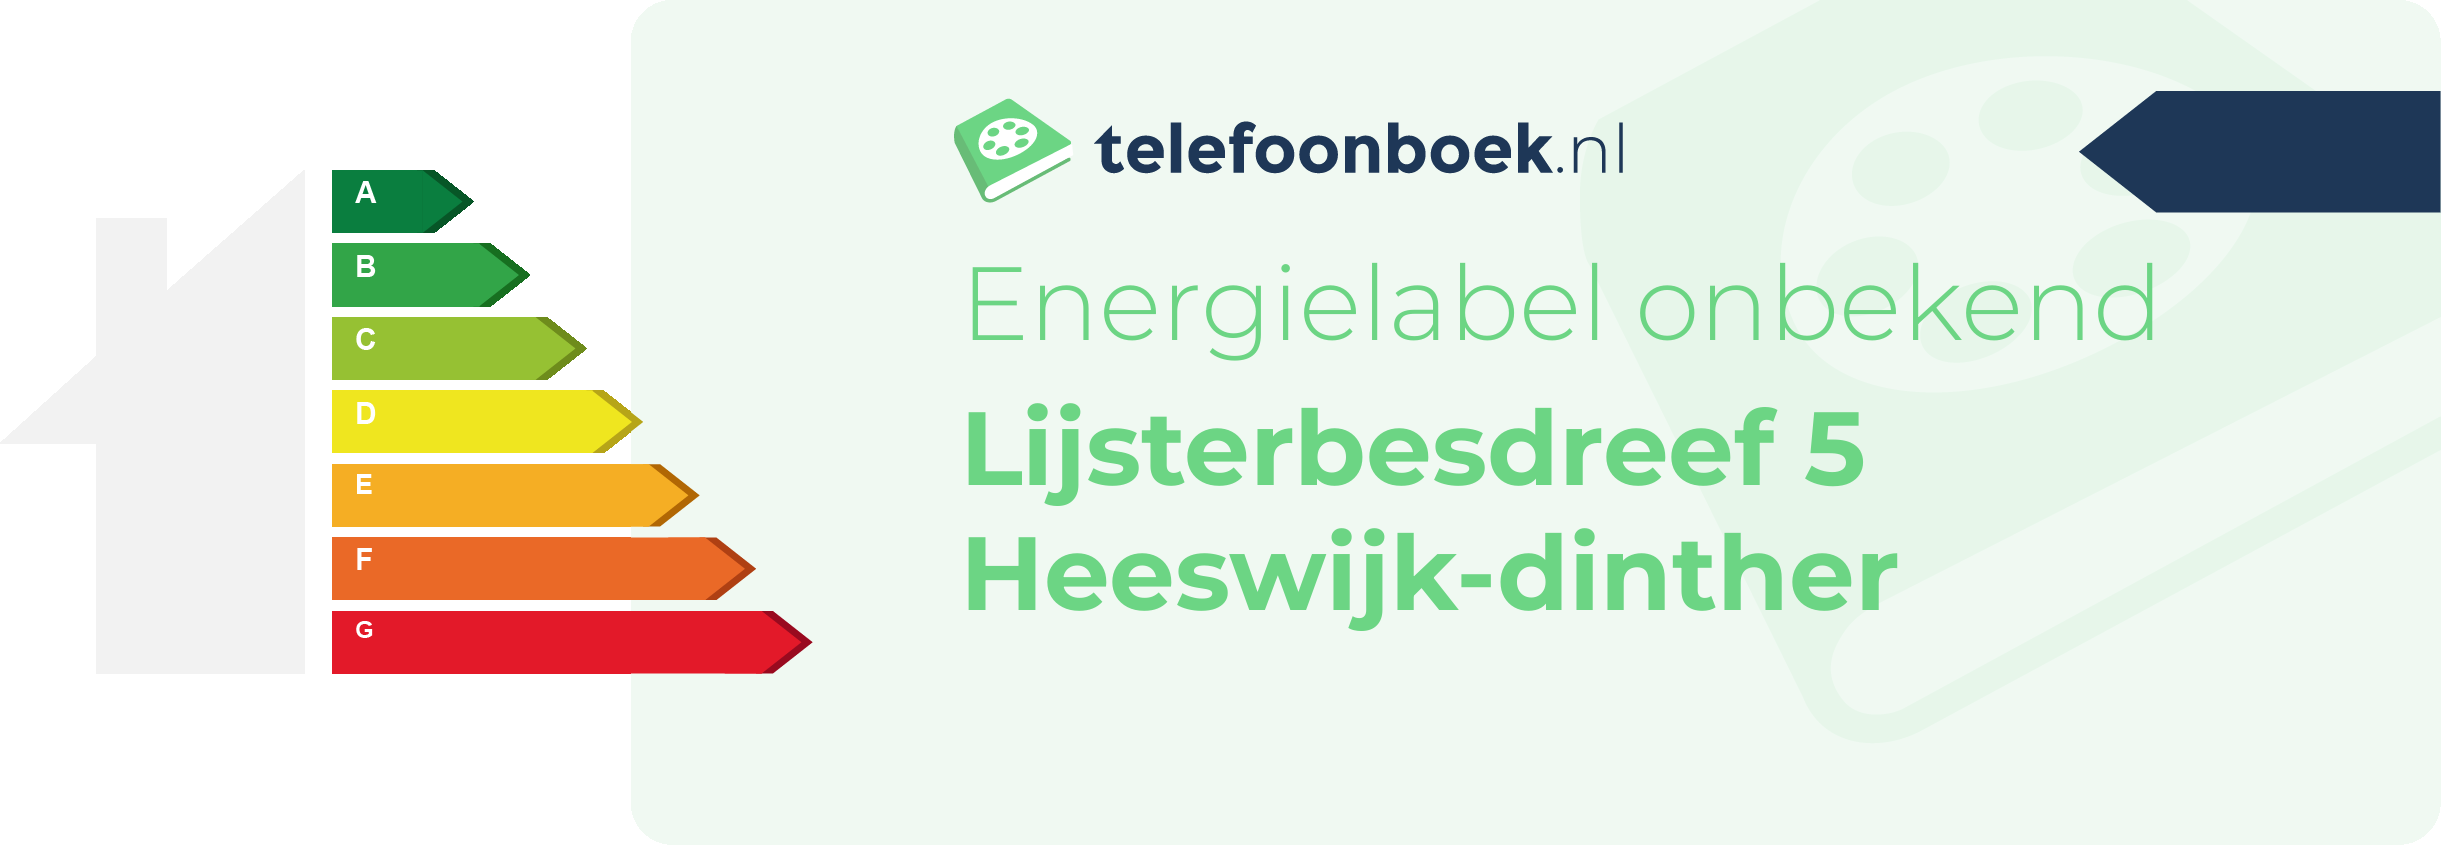 Energielabel Lijsterbesdreef 5 Heeswijk-Dinther